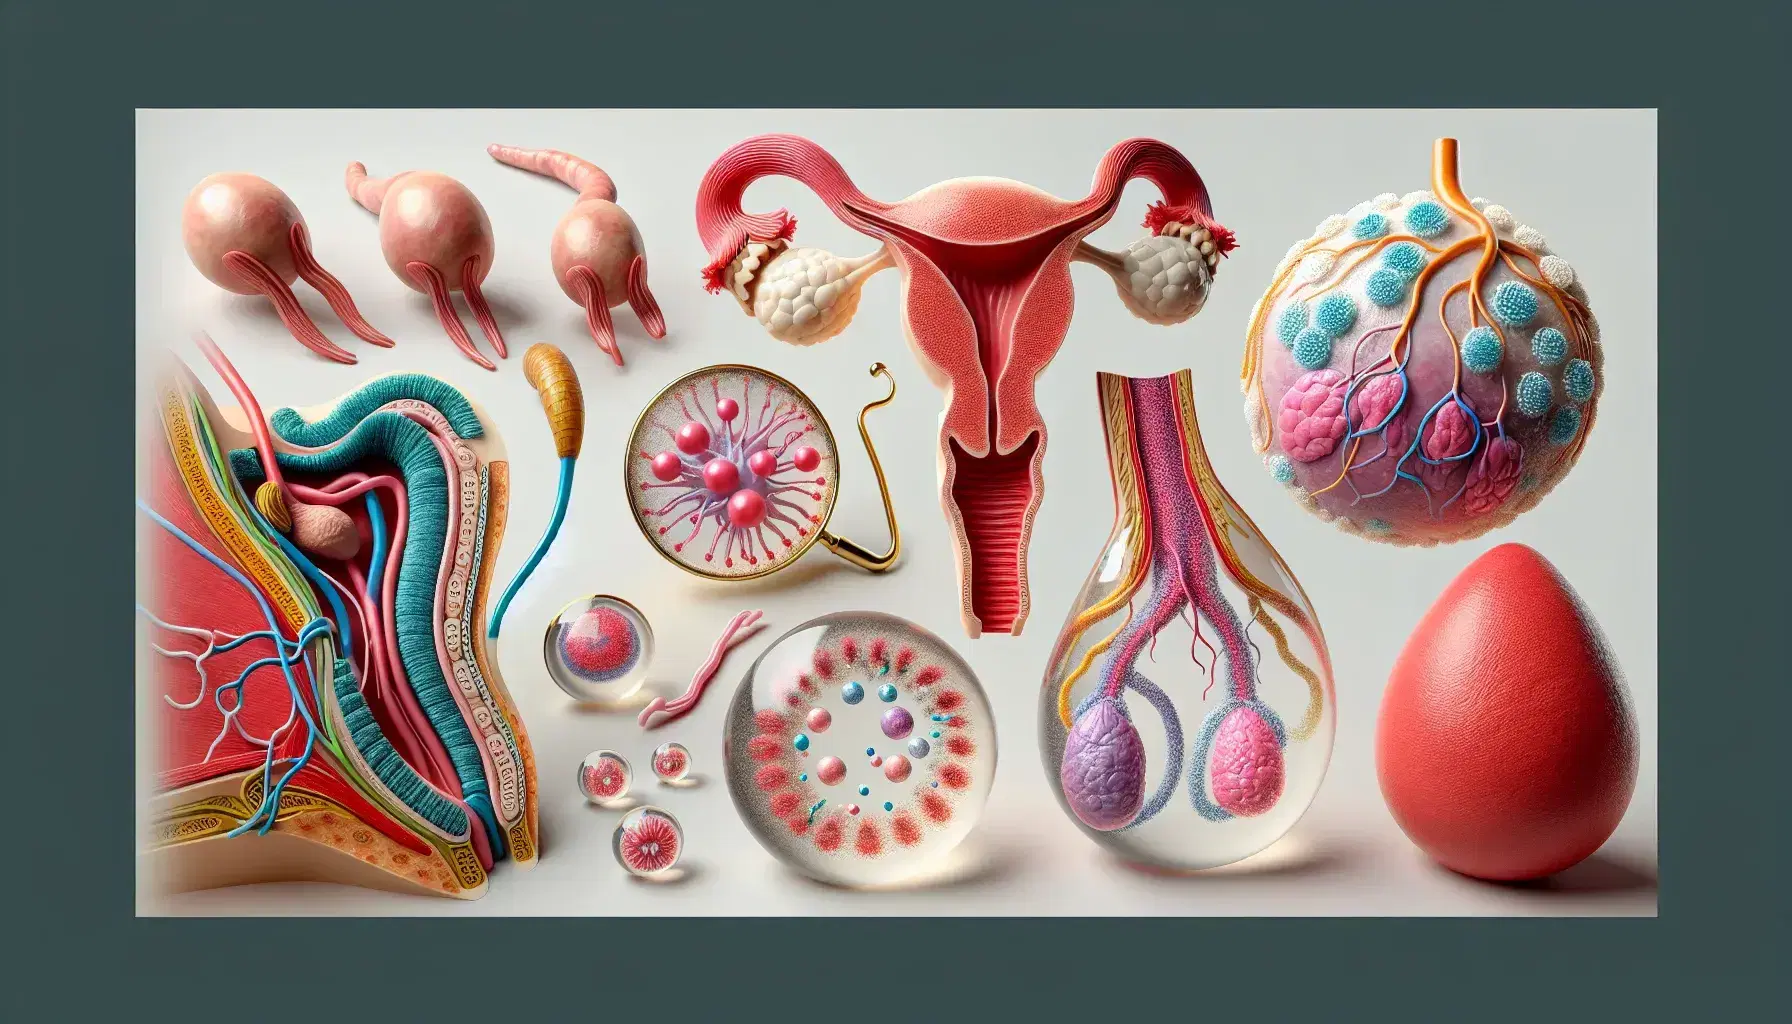 Modelos anatómicos tridimensionales del sistema reproductivo humano, con órganos masculinos a la izquierda y femeninos a la derecha, y una gota de semen ampliada en el centro sobre fondo neutro.